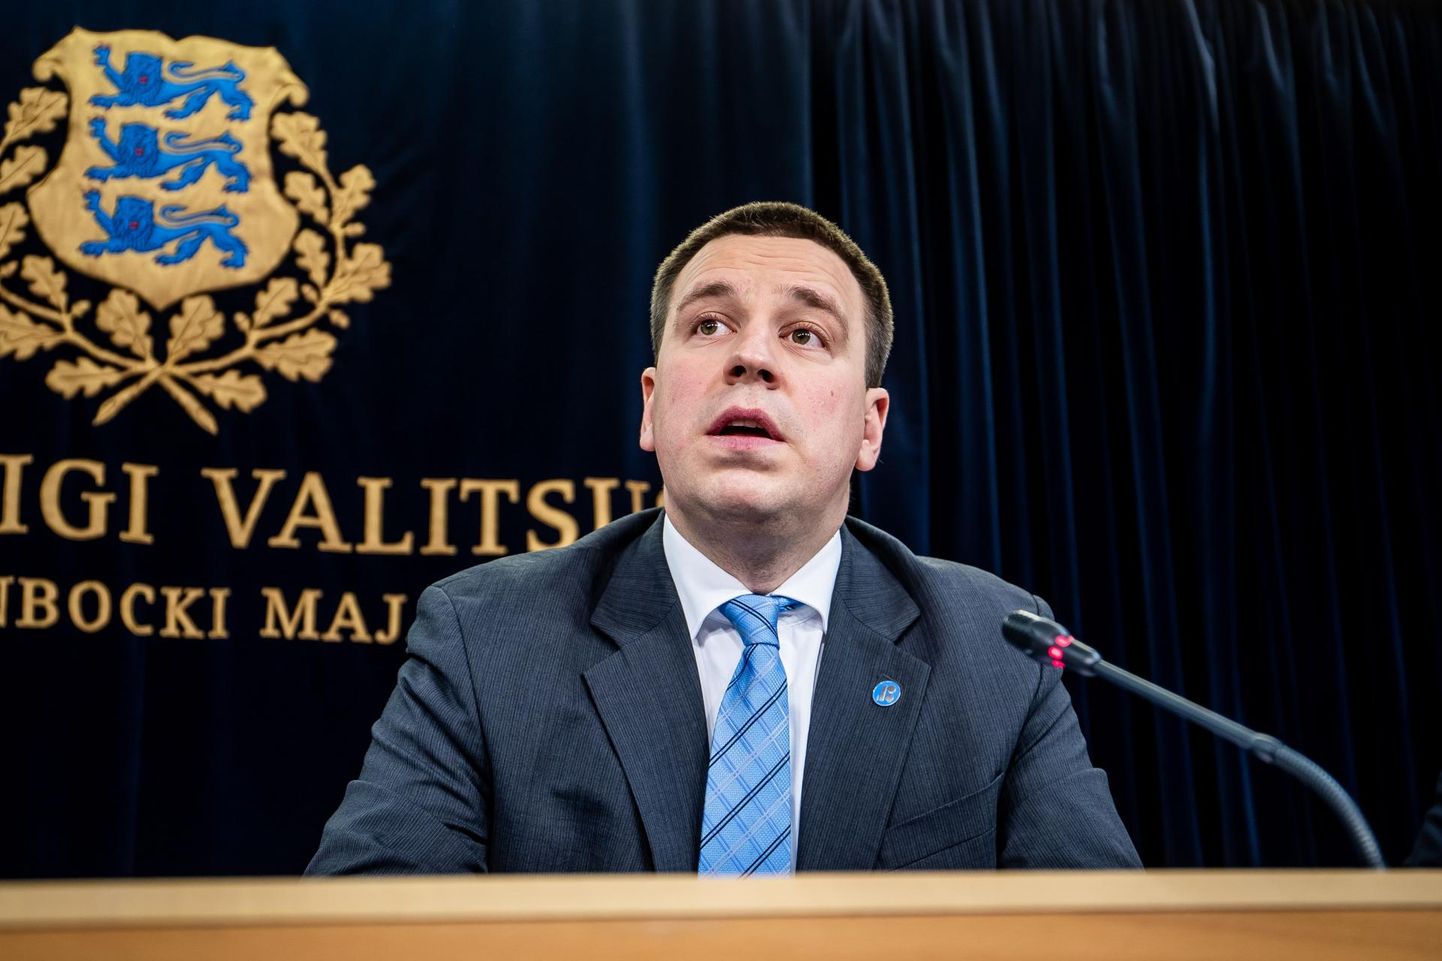 Keskerakonna liider Jüri Ratas on täna endiselt Eesti peaminister ning sellelt kohalt lahkub ta pärast seda, kui riigikogu on uue peaministri ametisse kinnitanud.